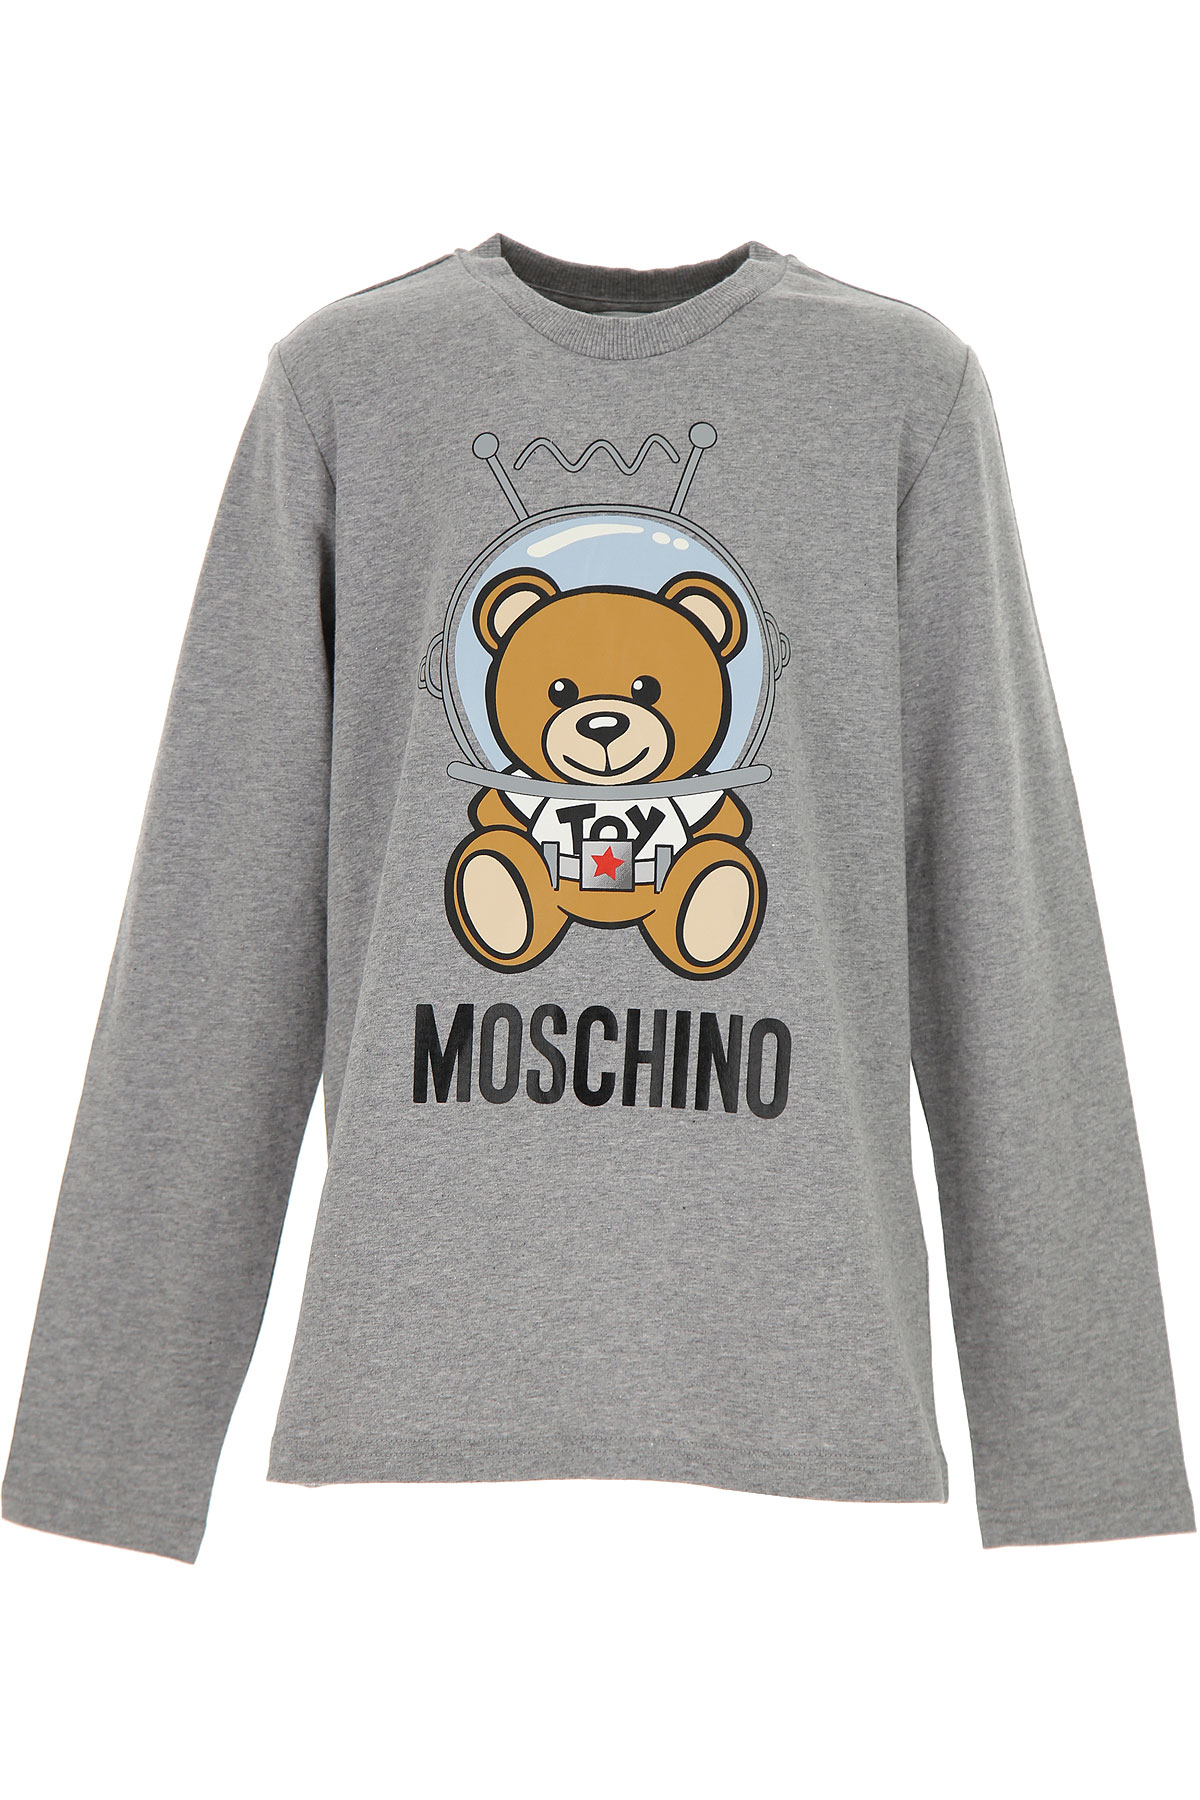 Moschino Kinder T-Shirt für Jungen Günstig im Sale, Grau, Baumwolle, 2017, 10Y 12Y 14Y 4Y 5Y 6Y 8Y